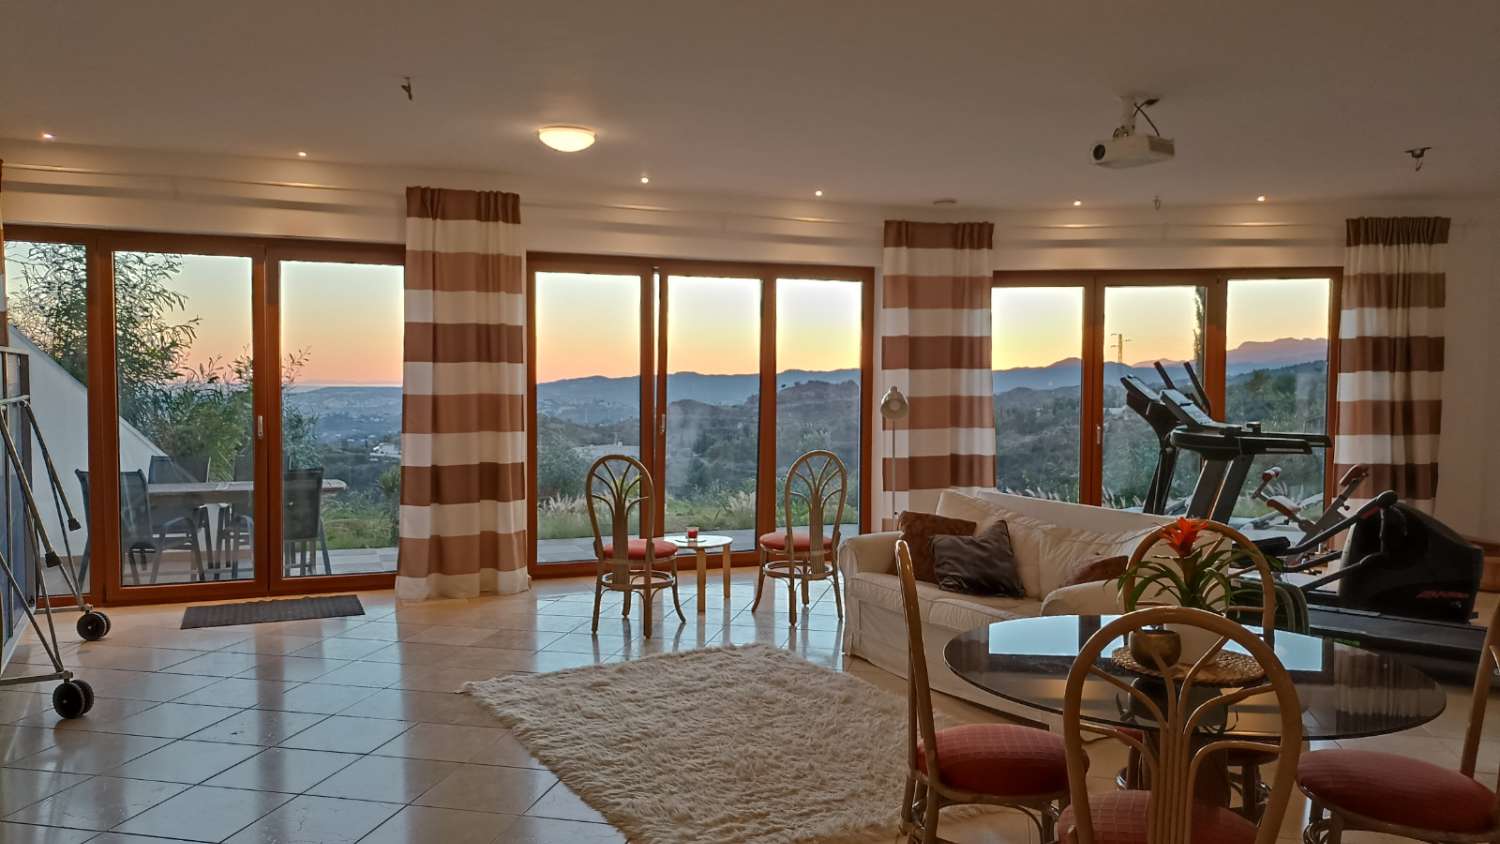 SPEKTAKULÄR Villa till salu i urbaniseringen av Mijas med panoramautsikt